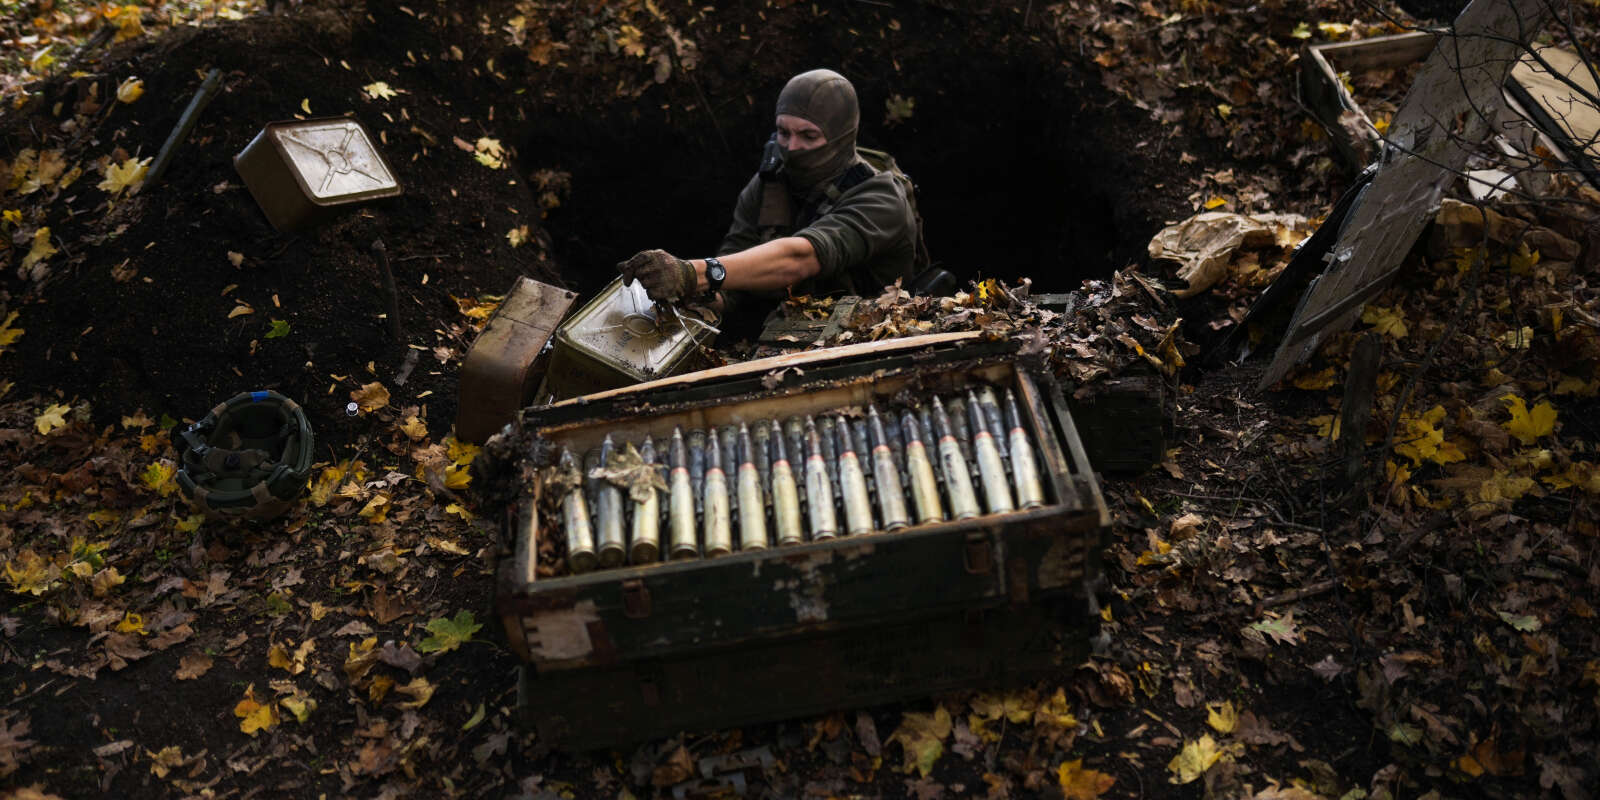 Un démineur ukrainien récupère les munitions russes laissées sur place, dans le village de Grakove, en Ukraine, le 13 octobre 2022.